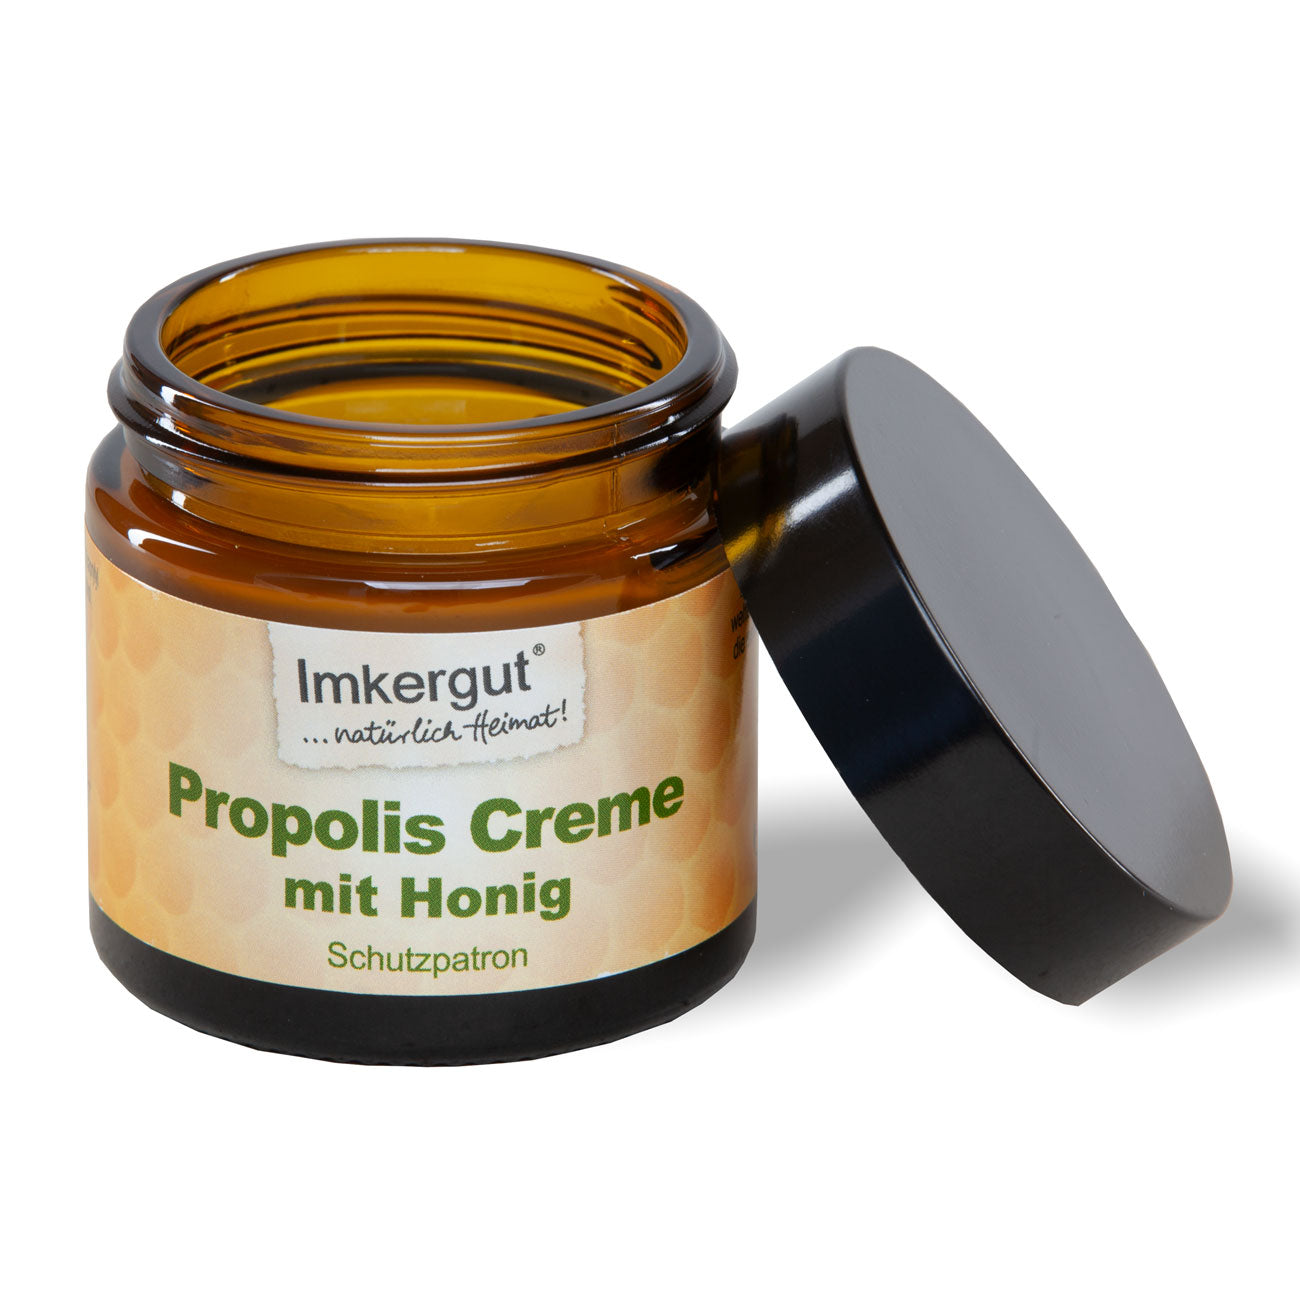 Propolis Creme mit Honig im 50 ml Tiegel - Schutzpatron -3er Set Sparpreis